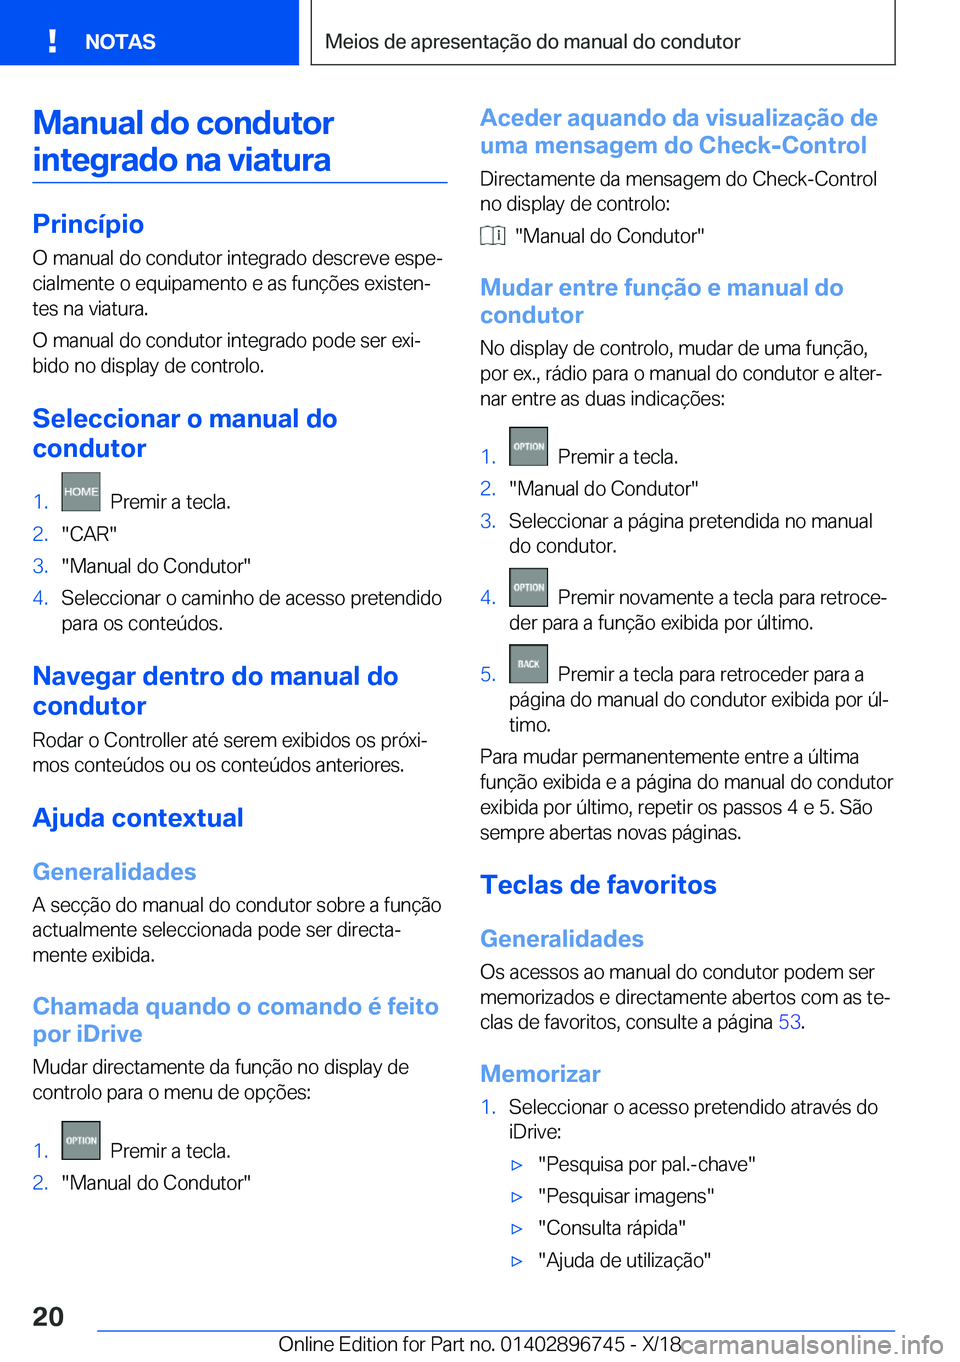 BMW X5 2019  Manual do condutor (in Portuguese) �M�a�n�u�a�l��d�o��c�o�n�d�u�t�o�r�i�n�t�e�g�r�a�d�o��n�a��v�i�a�t�u�r�a
�P�r�i�n�c�